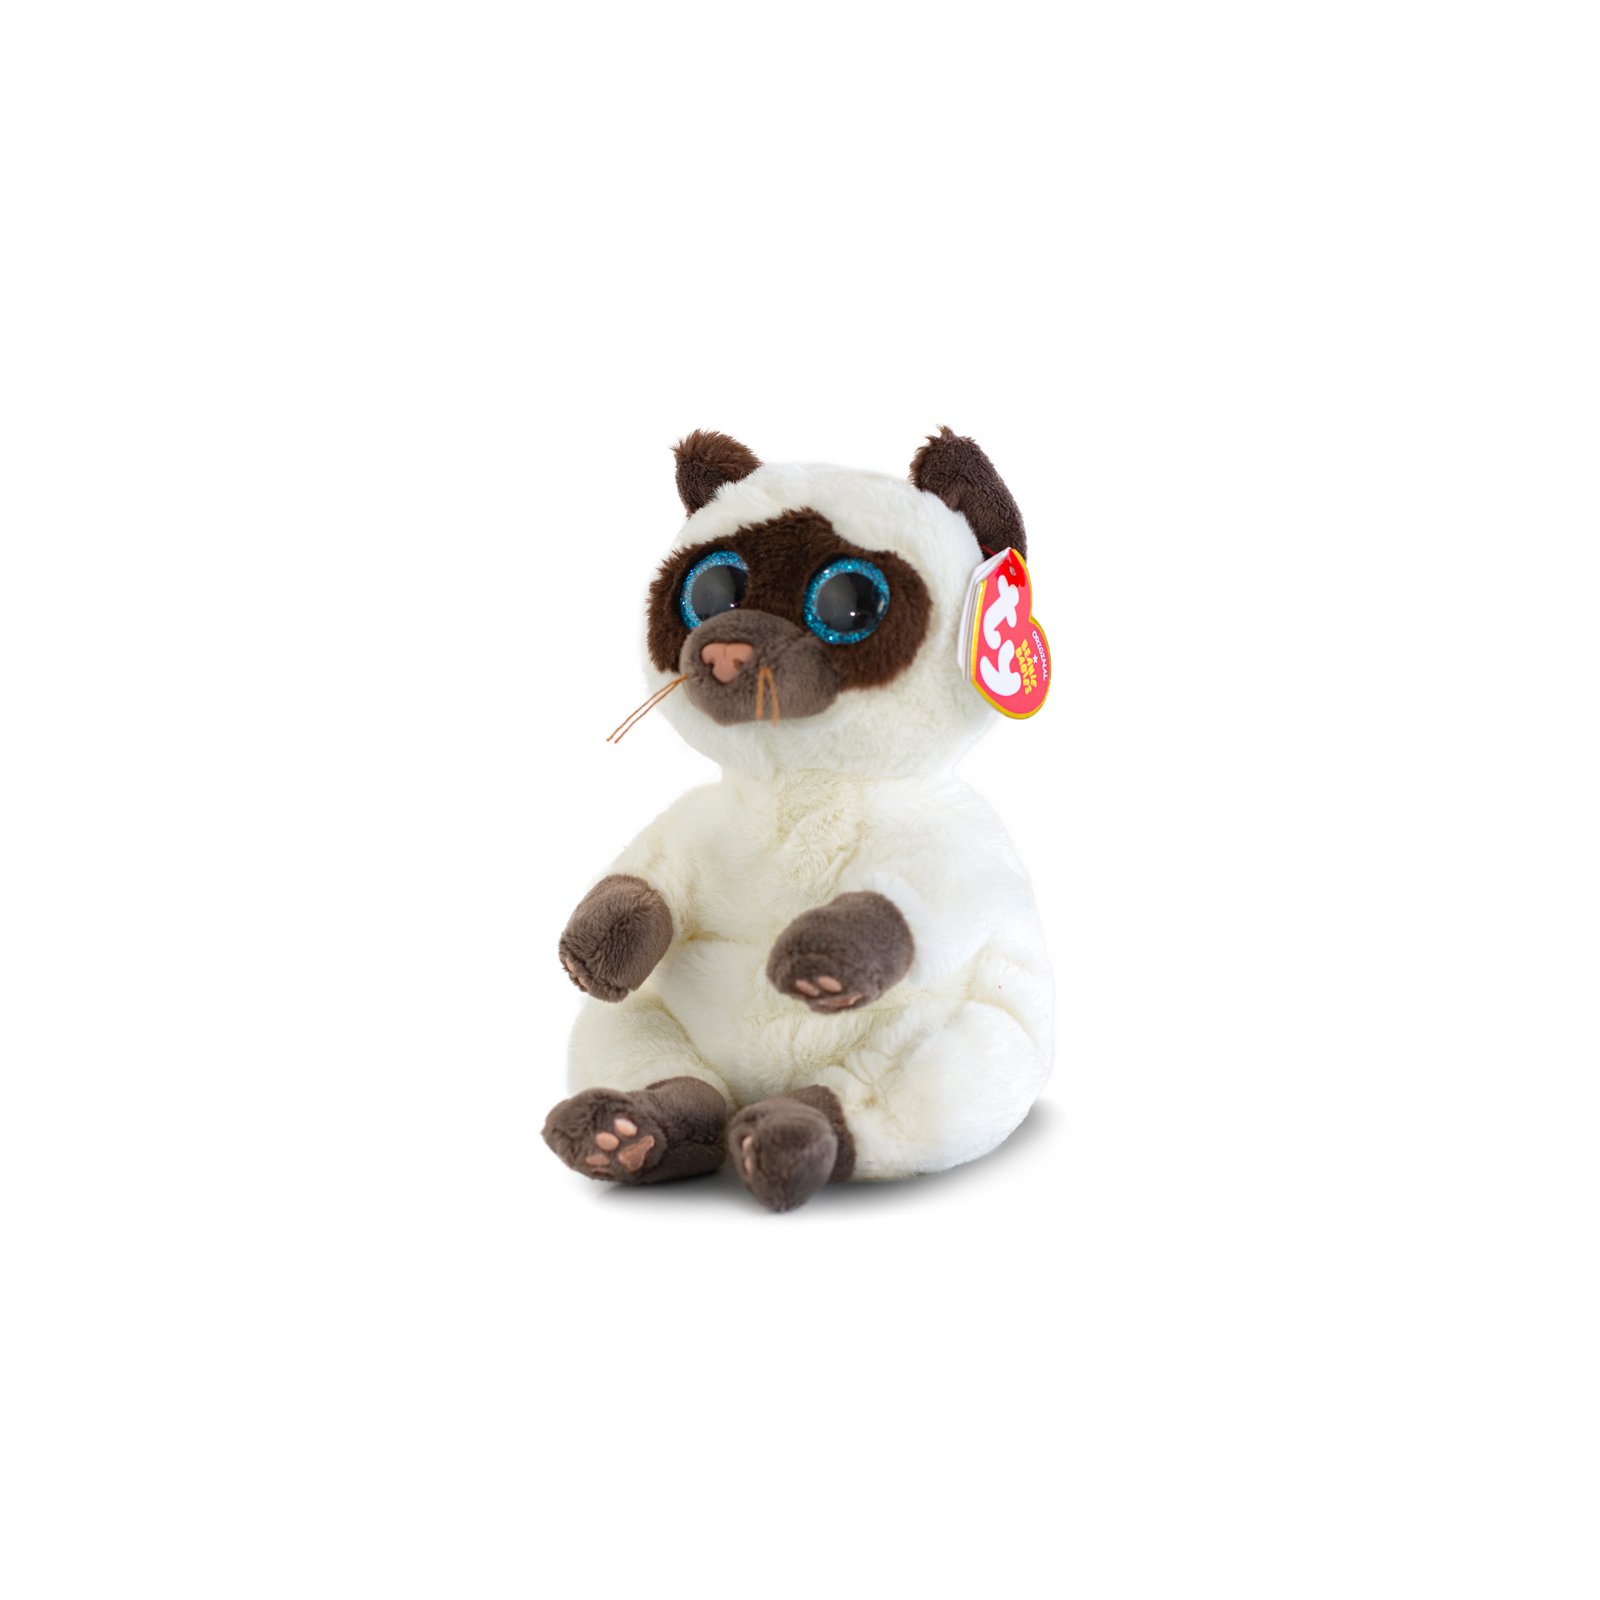 Мягкая игрушка Ty Beanie Bellies Сиамская кошка MISO (40548)